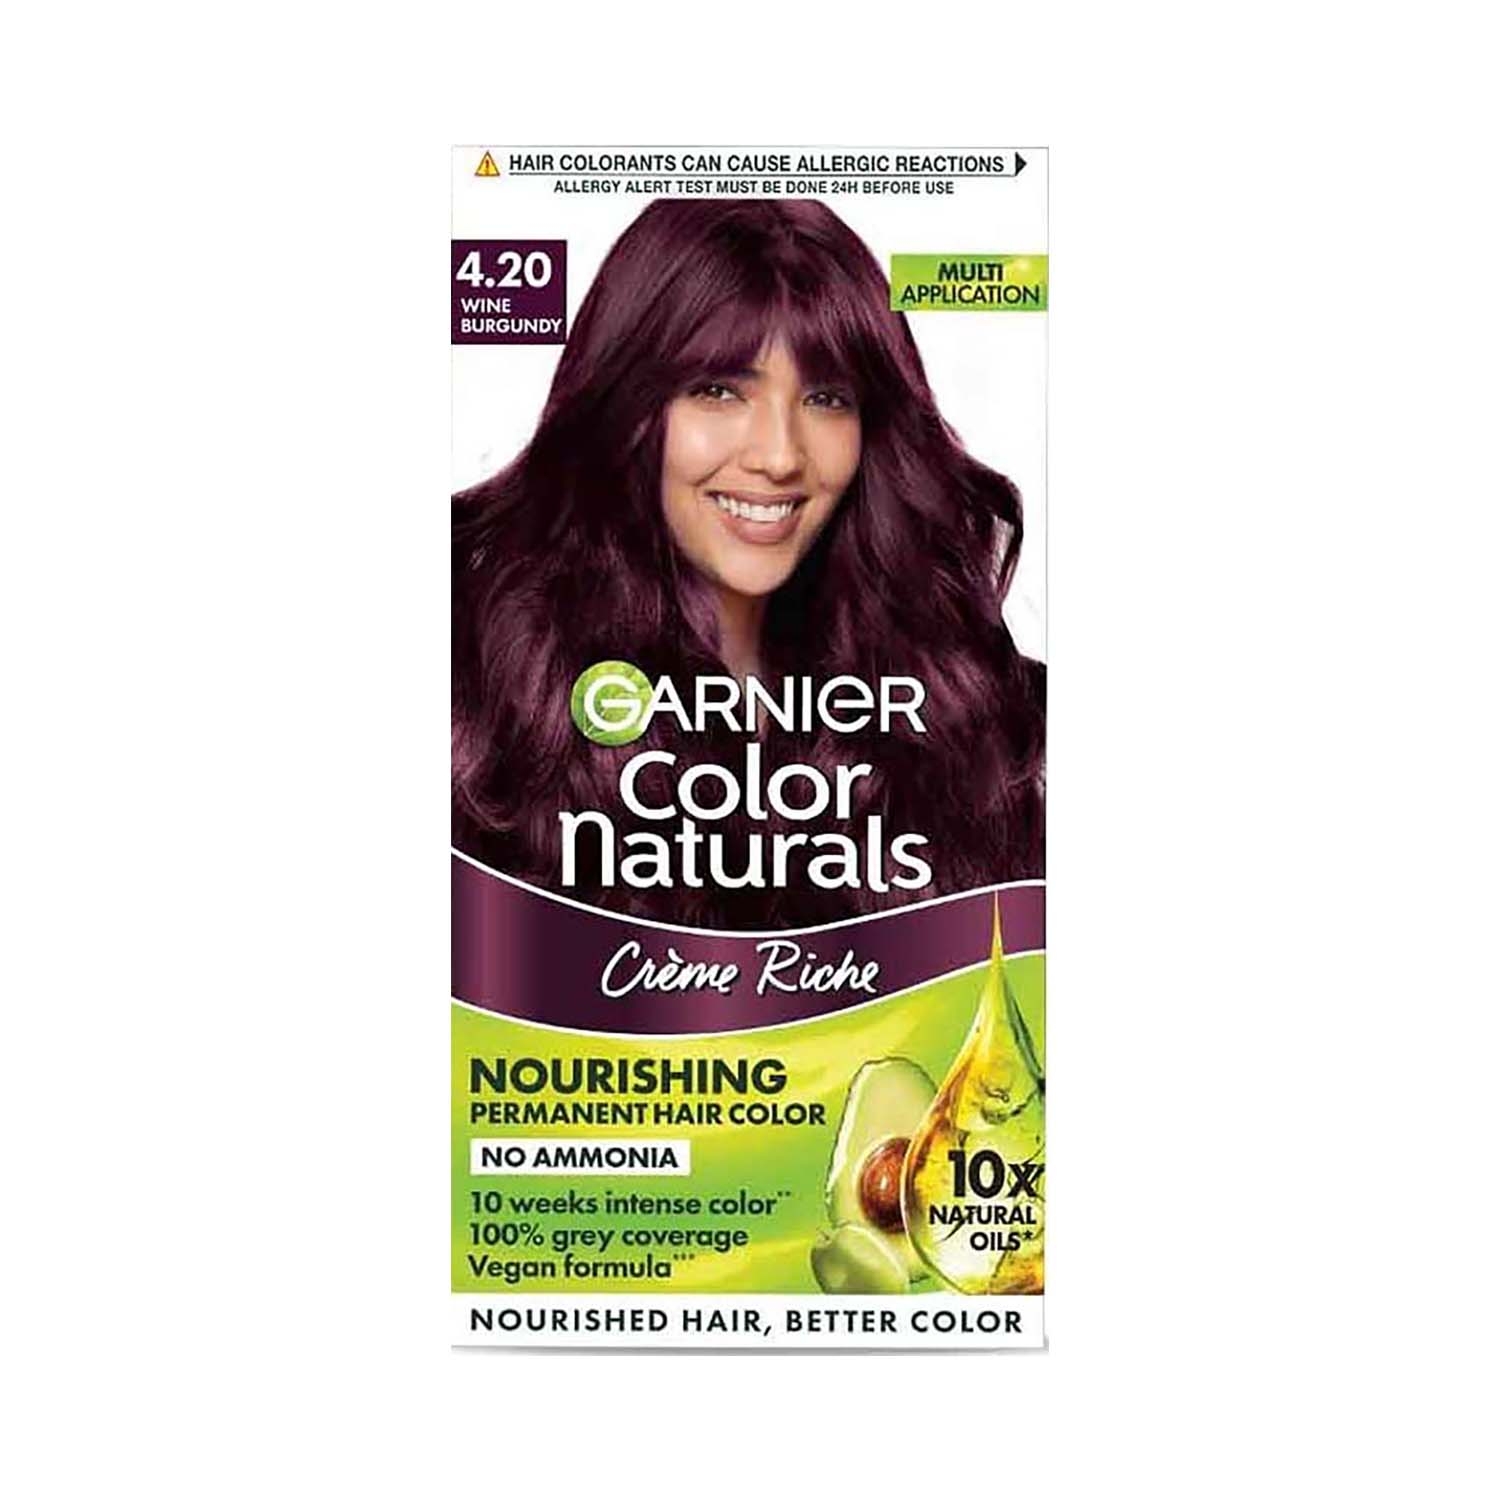 Garnier | Garnier Color Naturals Creme Riche Hair Color - 4.20 Wine Burgundy (70ml+60g)